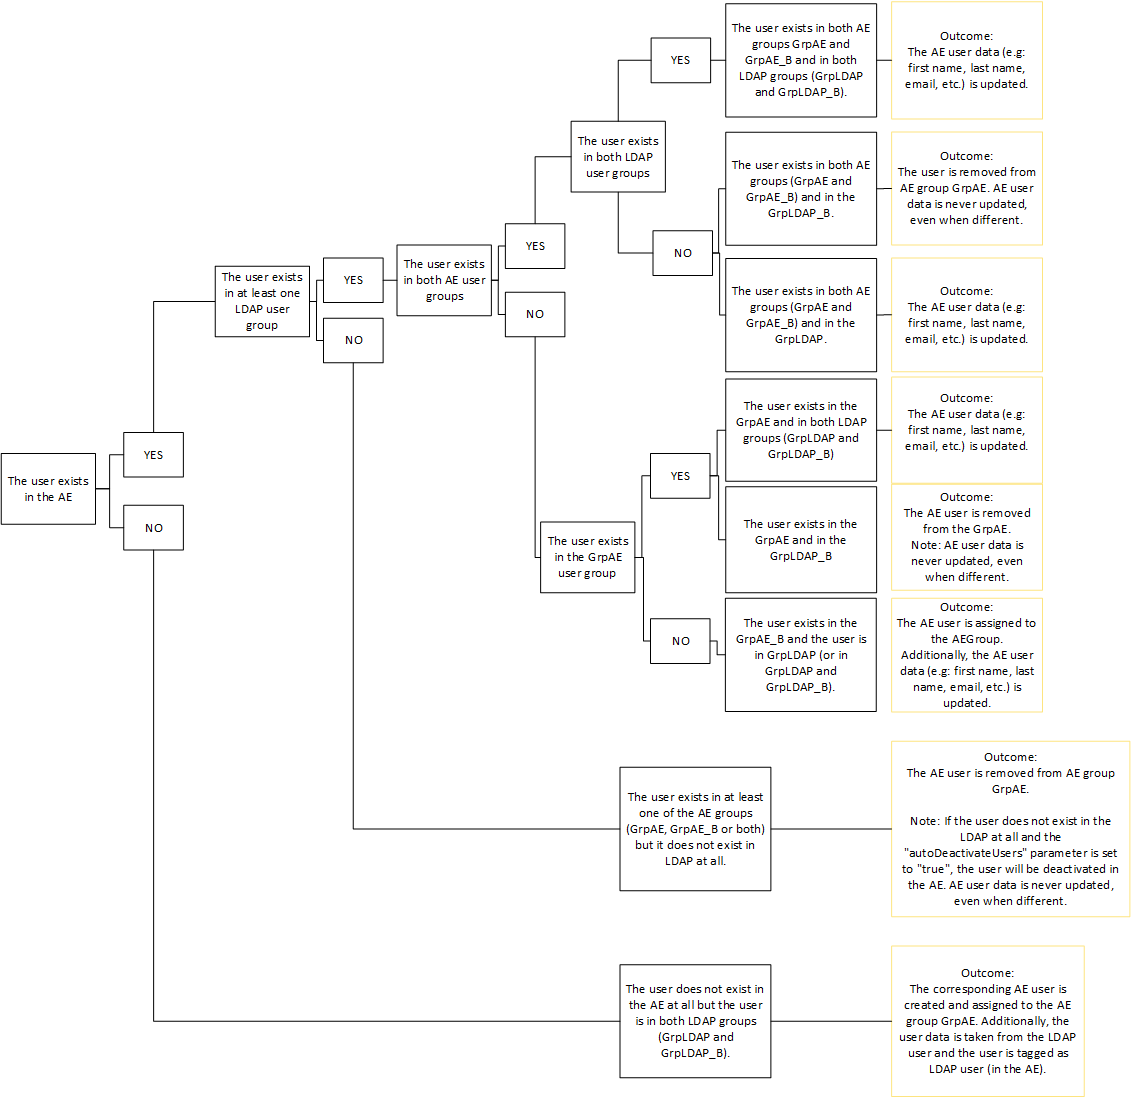 graphic depicting decision tree for scenario 3